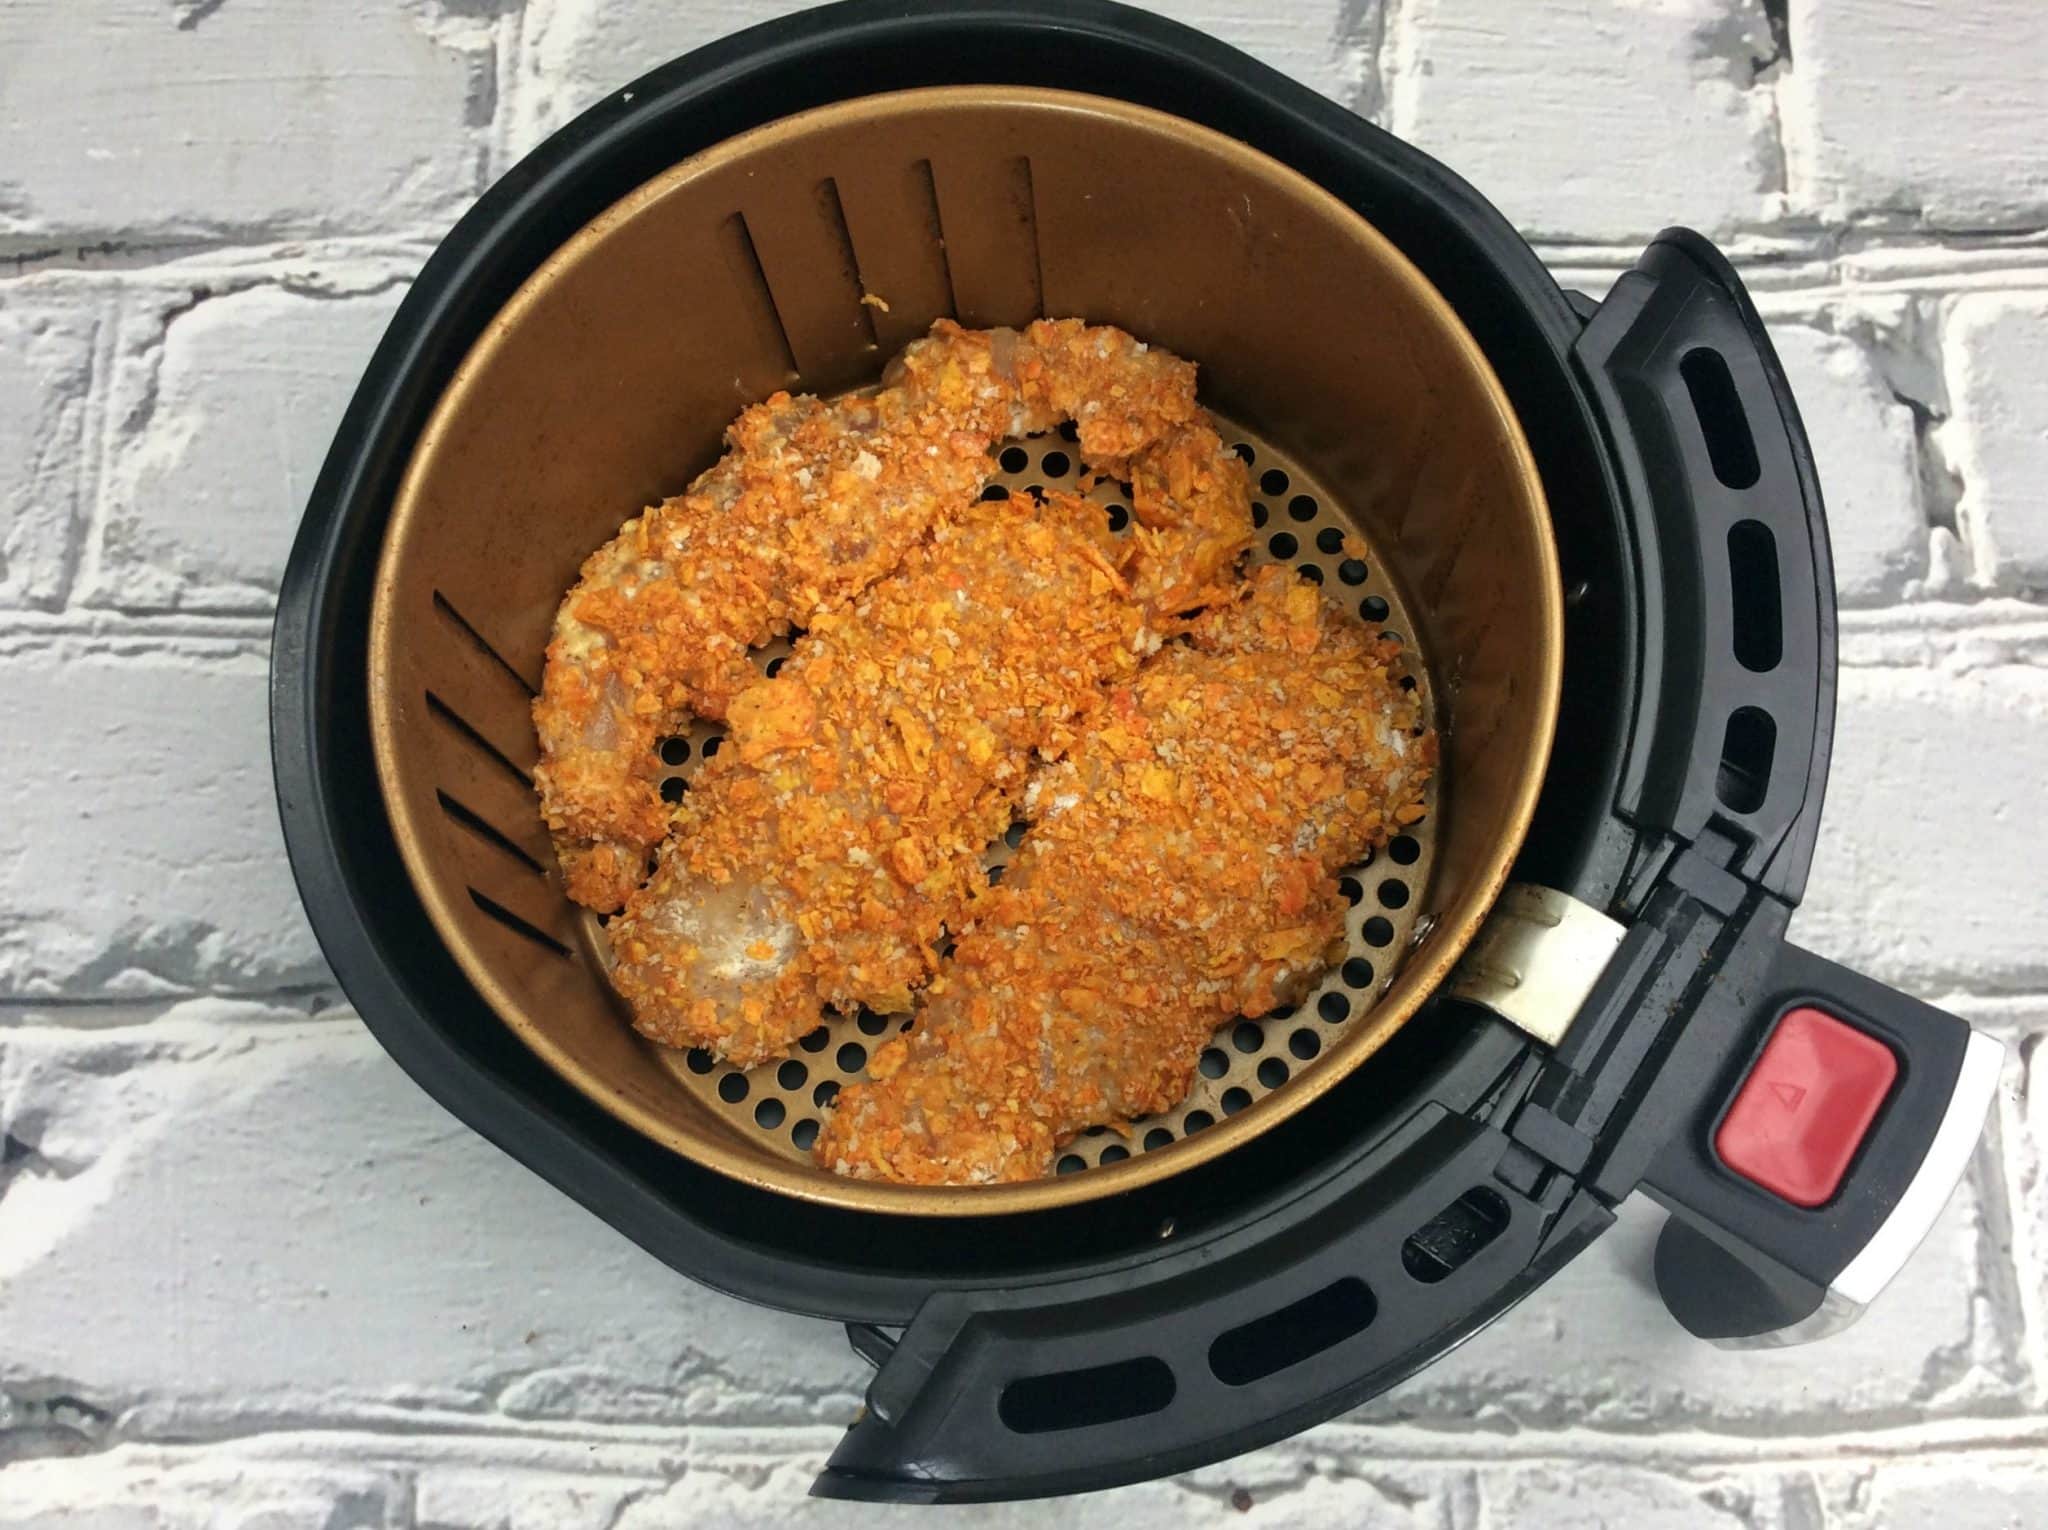 Doritos chicken tenders inside the basket of an air fryer.